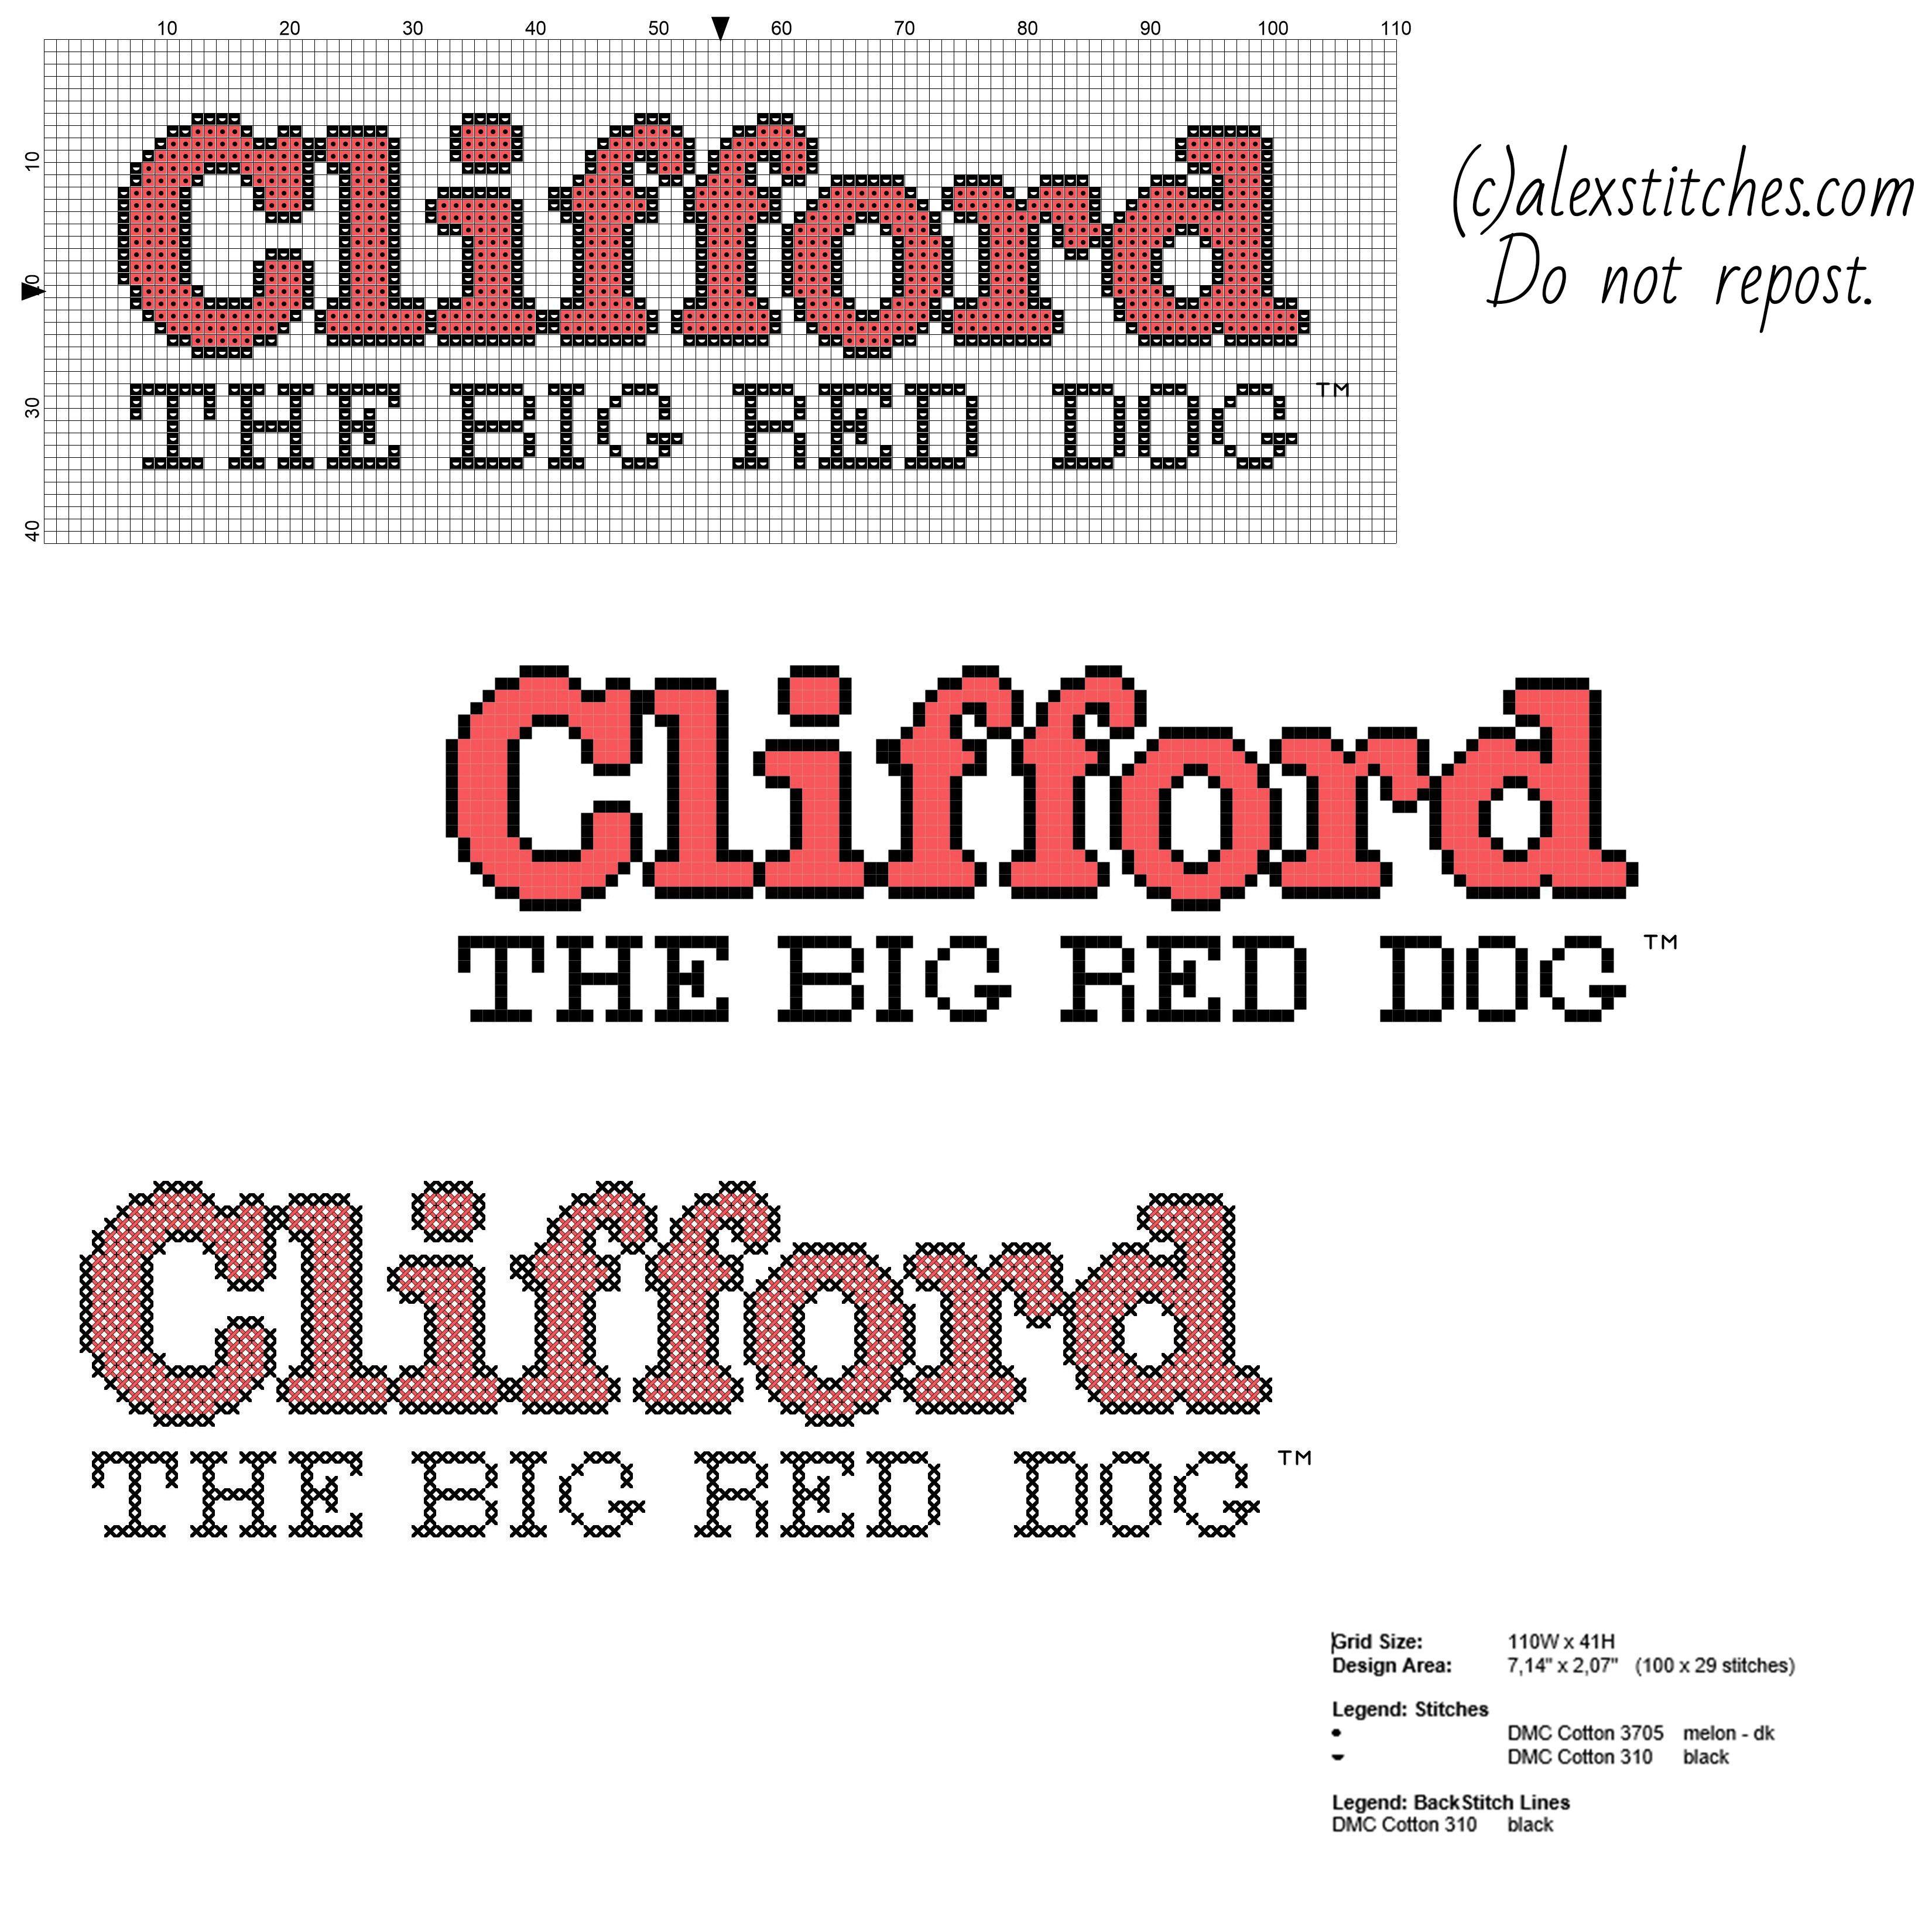 Big Red Dog Logo - Clifford the big red dog cartoon logo free cross stitch pattern